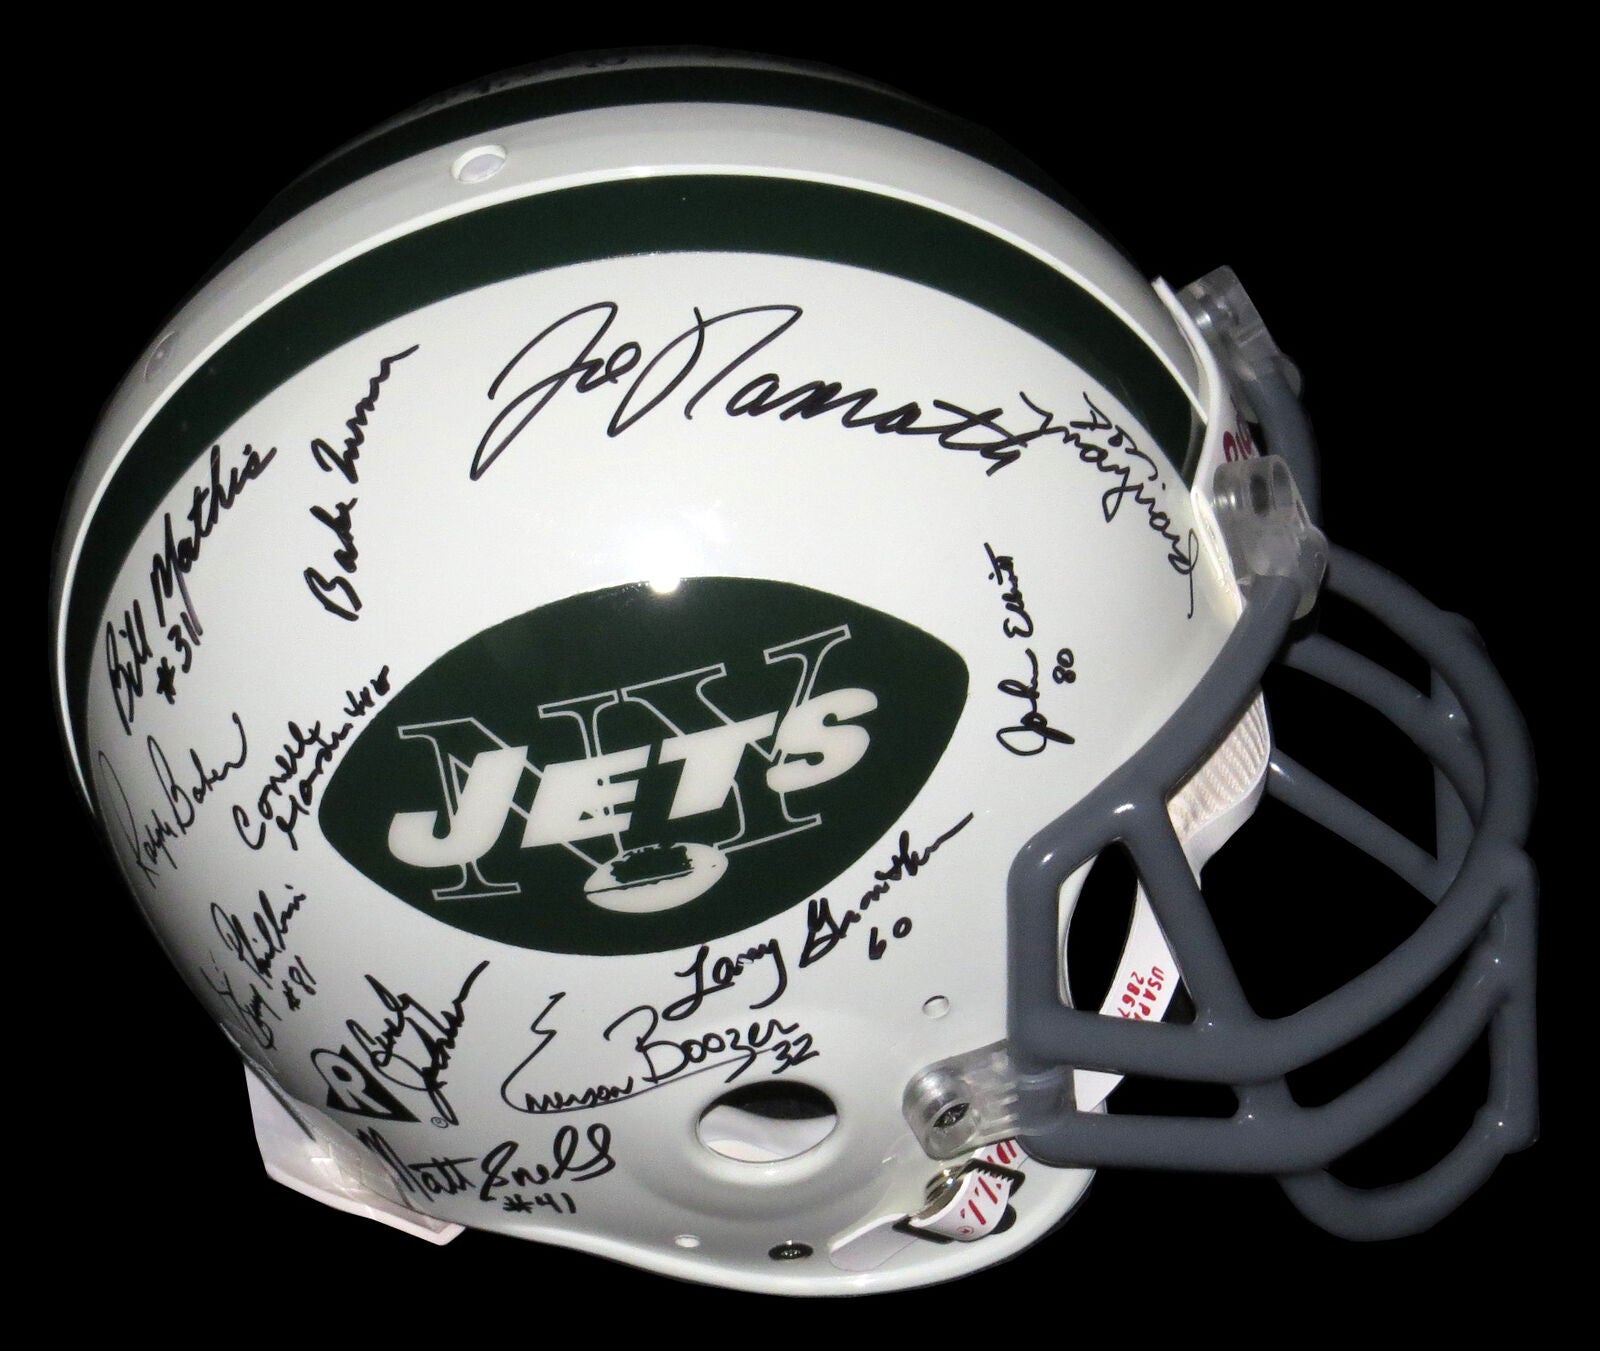 1968 New York Jets Super Bowl Champs Team Signed Full Size Helmet Steiner COA